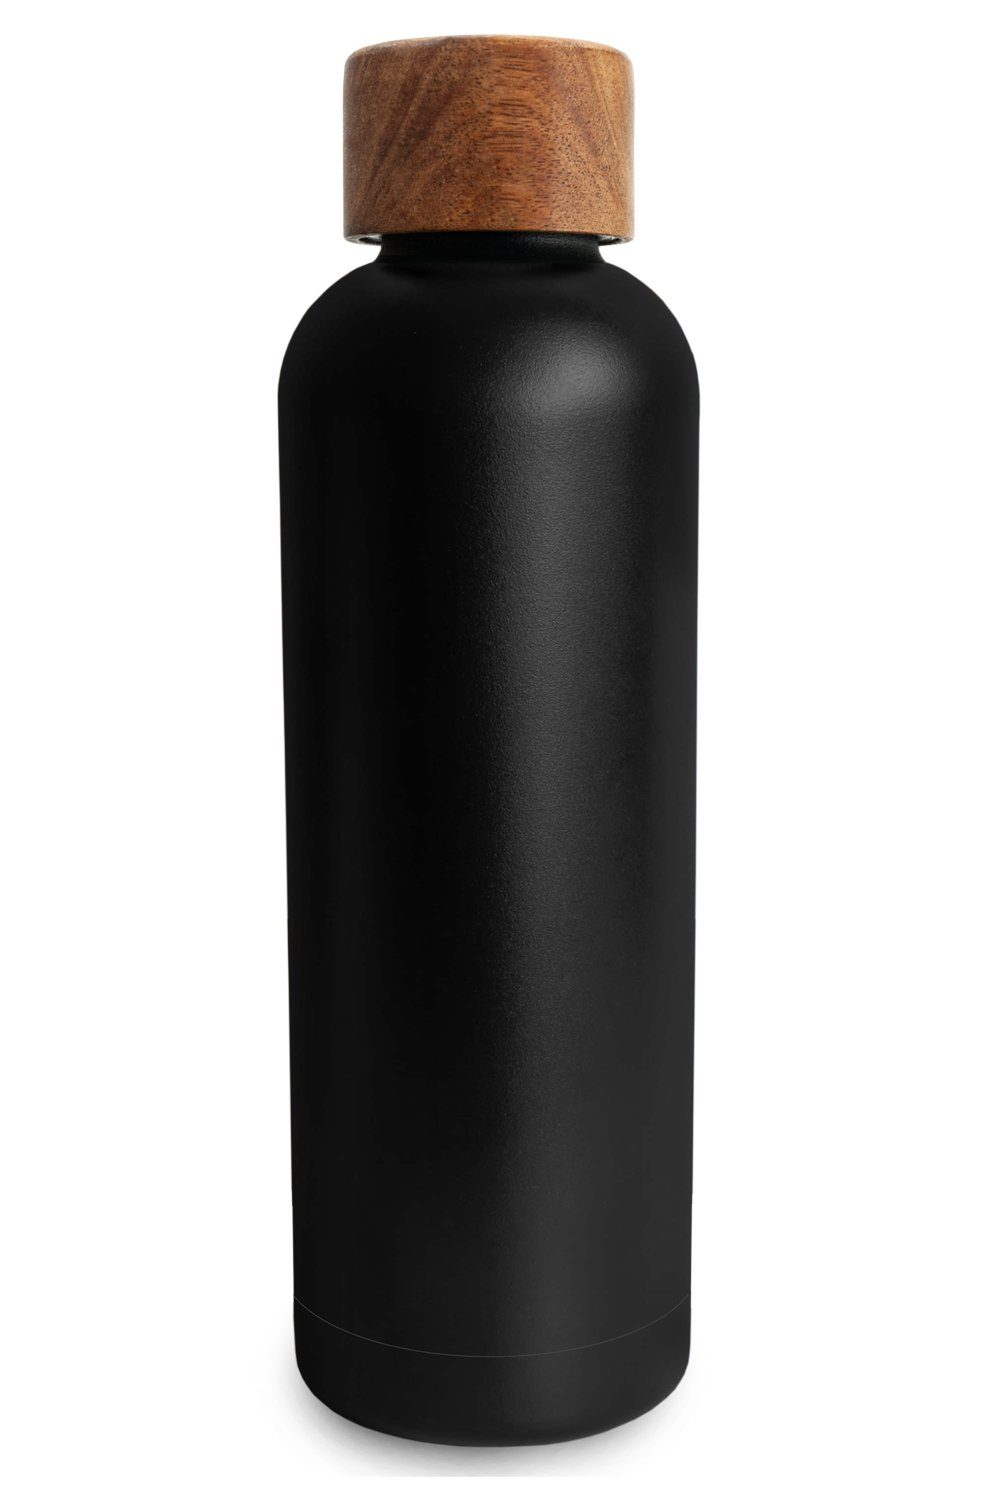 TRENDY AND NEW Trinkflasche T&N Edelstahl Trinkflasche 500ml - Wood Edition, Thermosflasche 500 ml für Büro, auslaufsichere, robuste, isolierte Wasserflasche 0,5l für Kohlensäure, Thermoskanne 500ml für unterwegs, Isolierflasche für Tee & Kaffee, hält 14h HEISS 29h EISKALT, Flasche für Sprudel-Wasser Anthracite